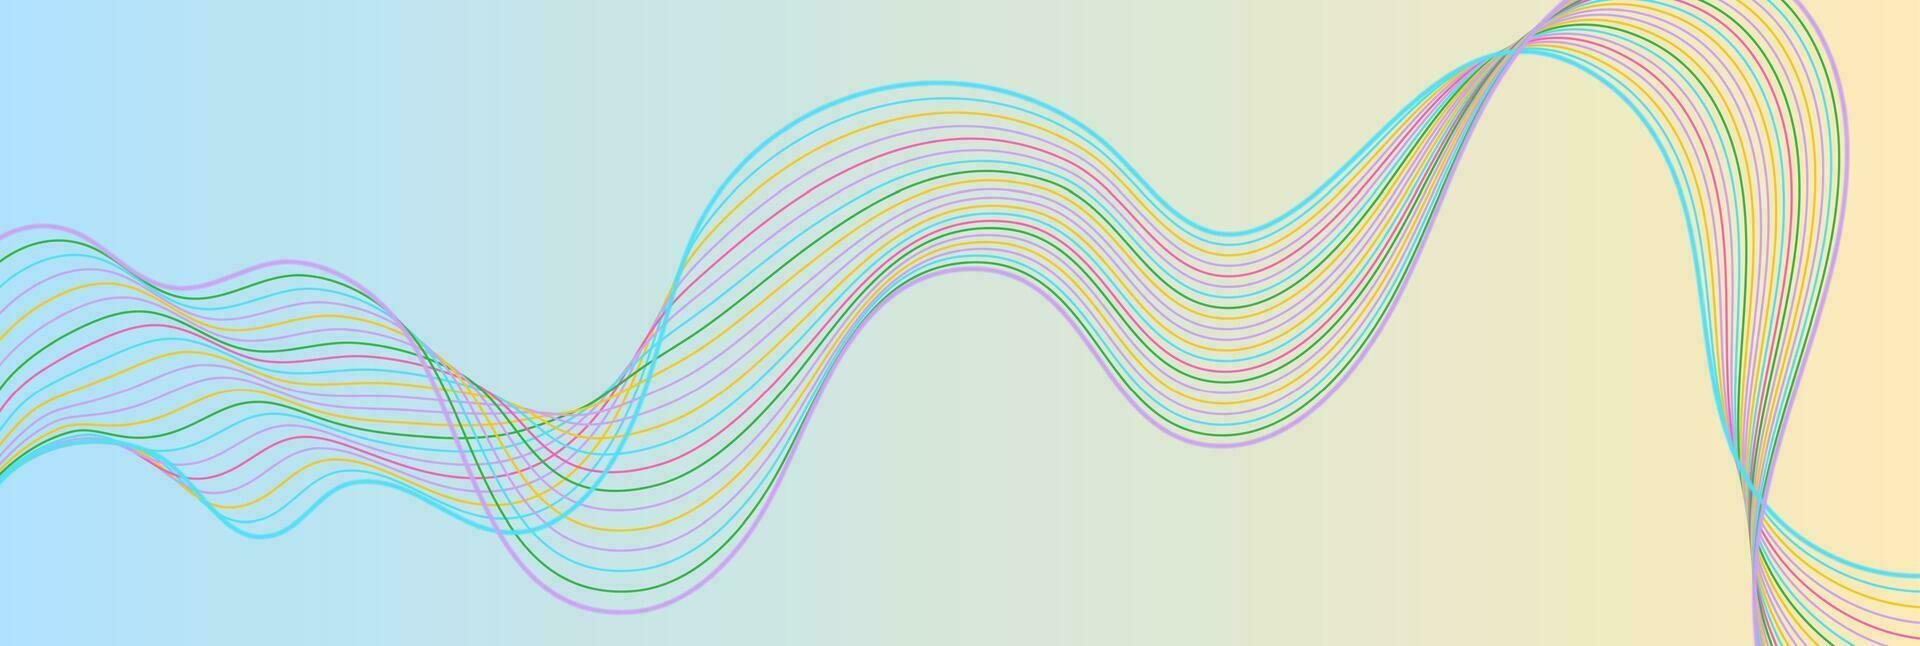 bunt Pastell- abstrakt Schallwellen Konzept Hintergrund vektor